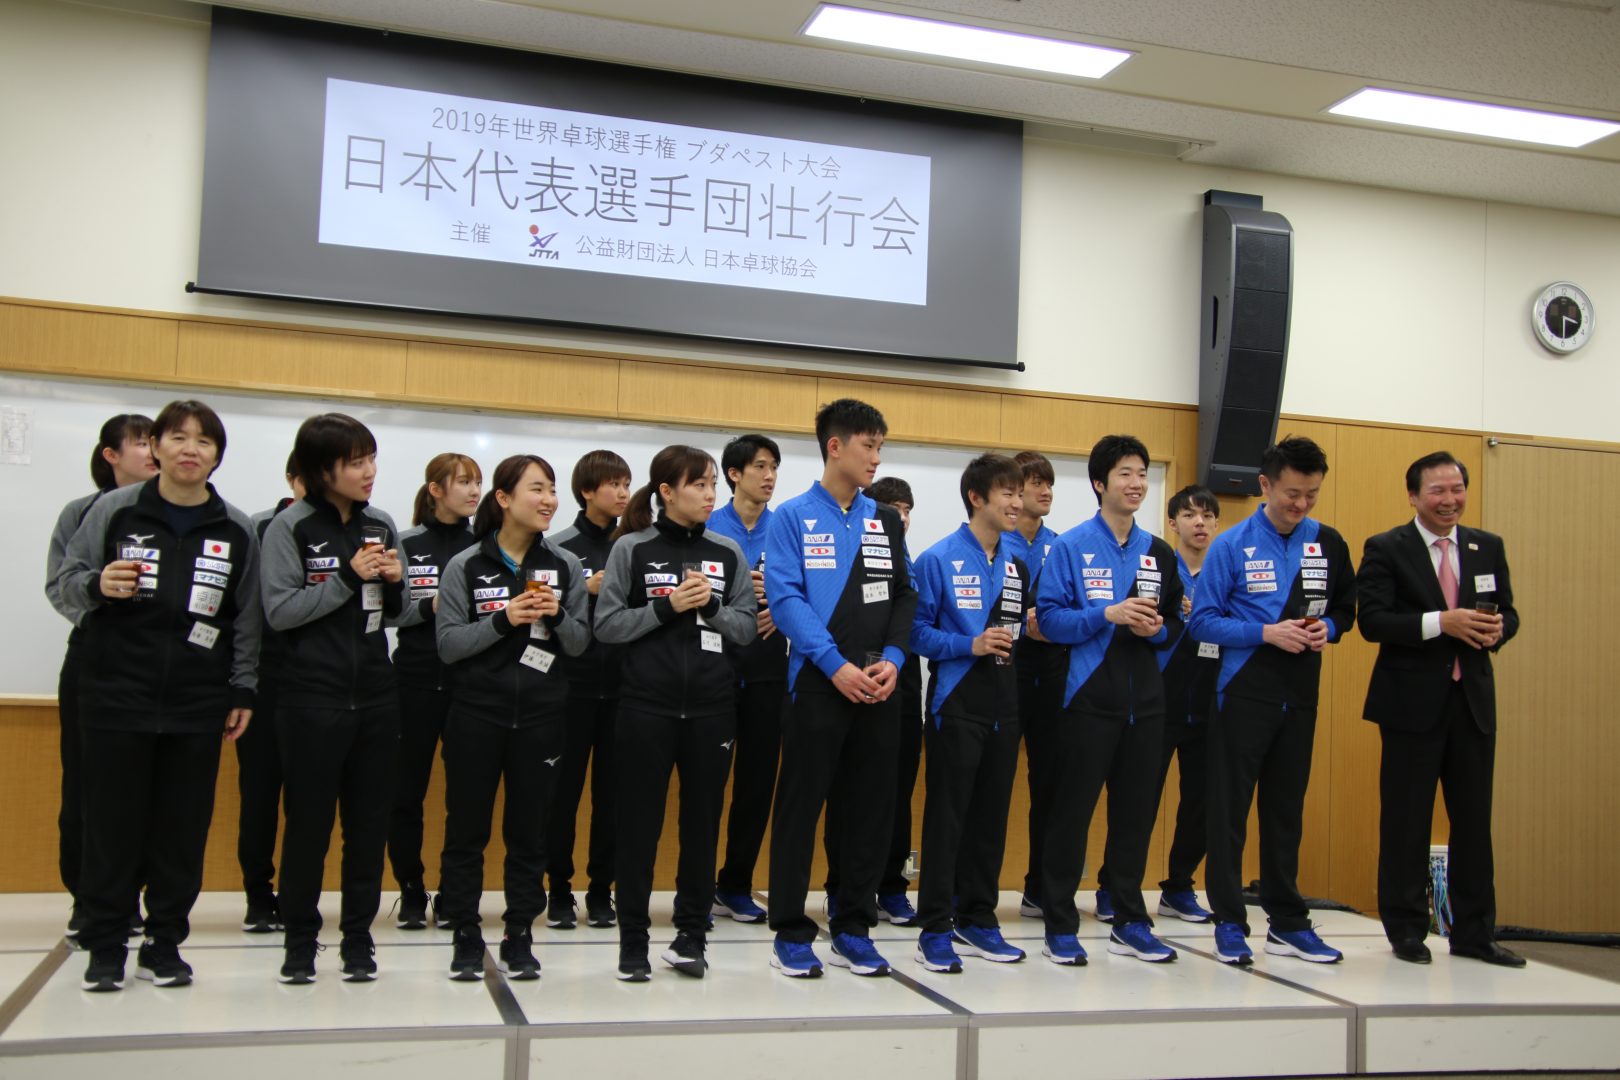 【卓球】世界卓球に明日出発　ナショナルトレーニングセンターに水谷・張本・石川・伊藤ら集結